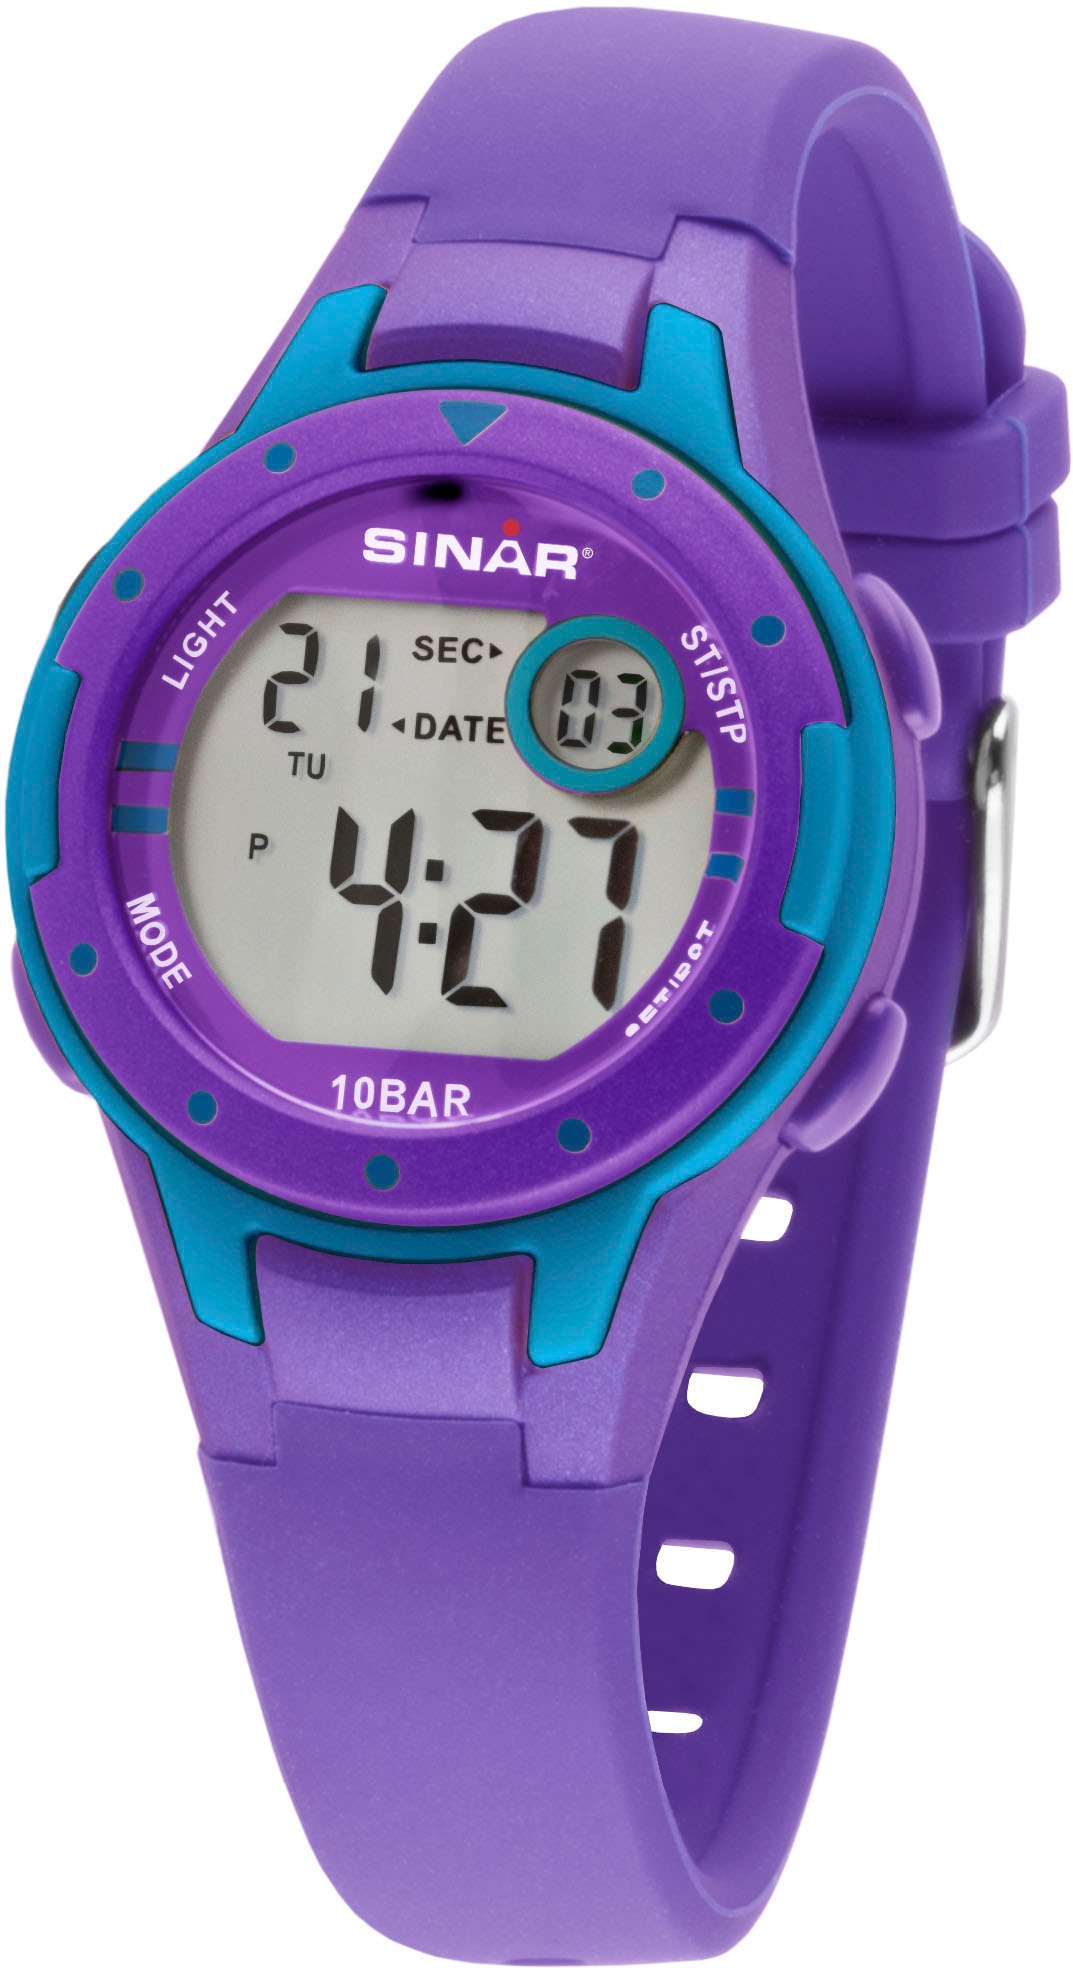 SINAR Quarzuhr »XE-52-7«, Armbanduhr, Kinderuhr, digital, Datum, ideal auch als Geschenk